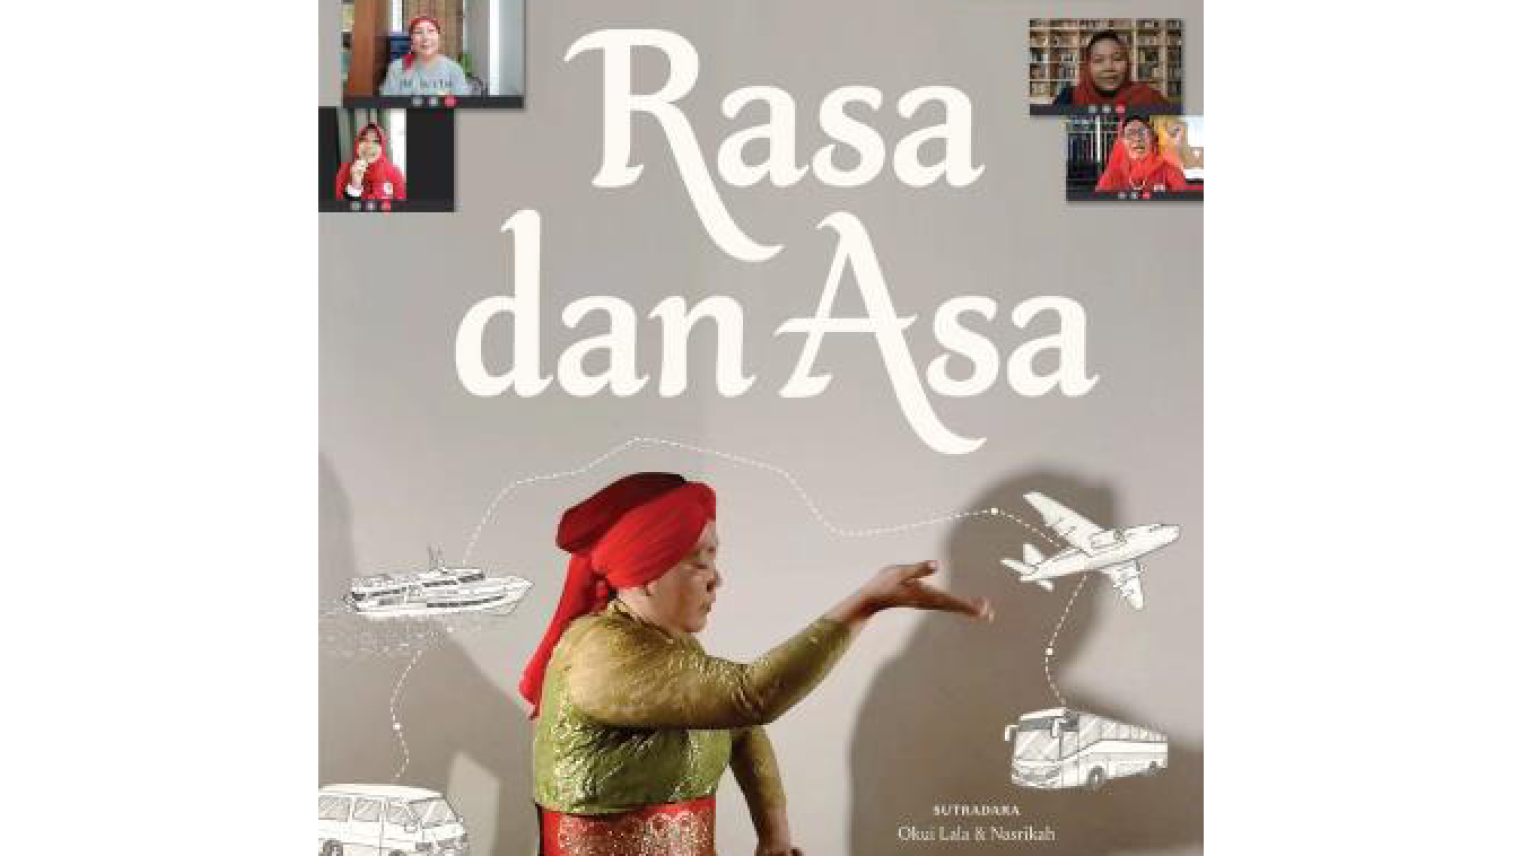 Documentary screening - Rasa dan Asa